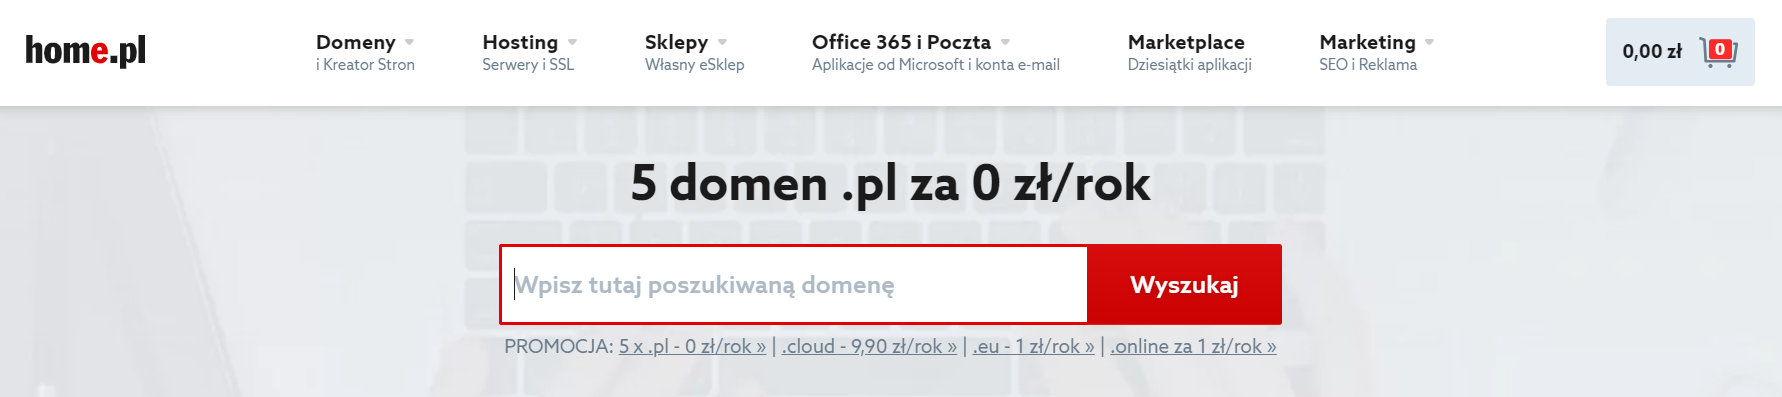 Home.pl - Skorzystaj z wyszukiwarki dostępnej na stronie głównej lub bezpośrednio w sekcji Domeny dostępnej w pasku nawigacji